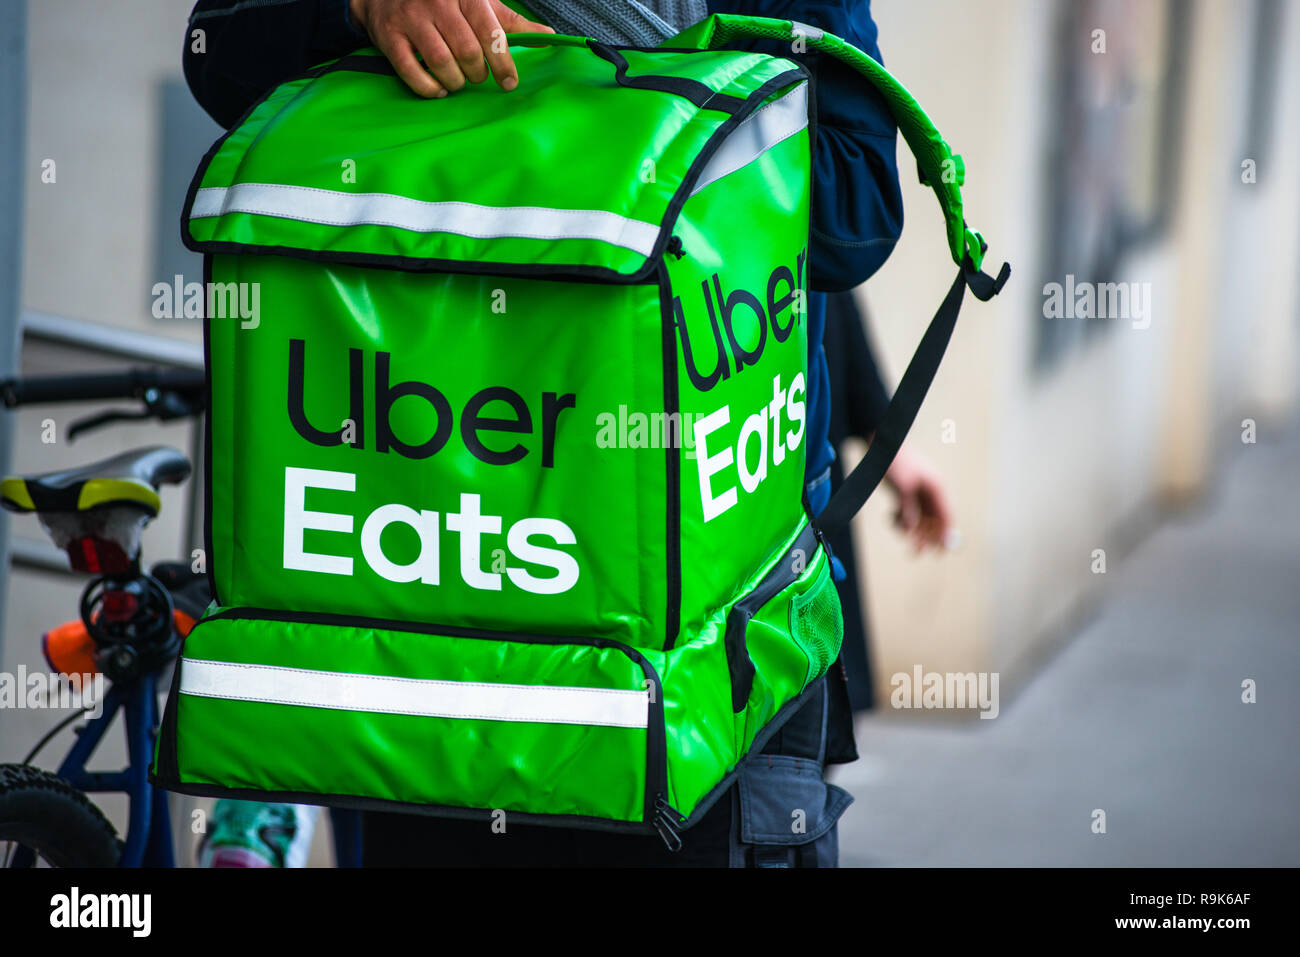 Uber isst ist eine US-amerikanische Online Bestell- und Lieferservice. Lieferung läuft an der Wiener Straße. Österreich. Stockfoto